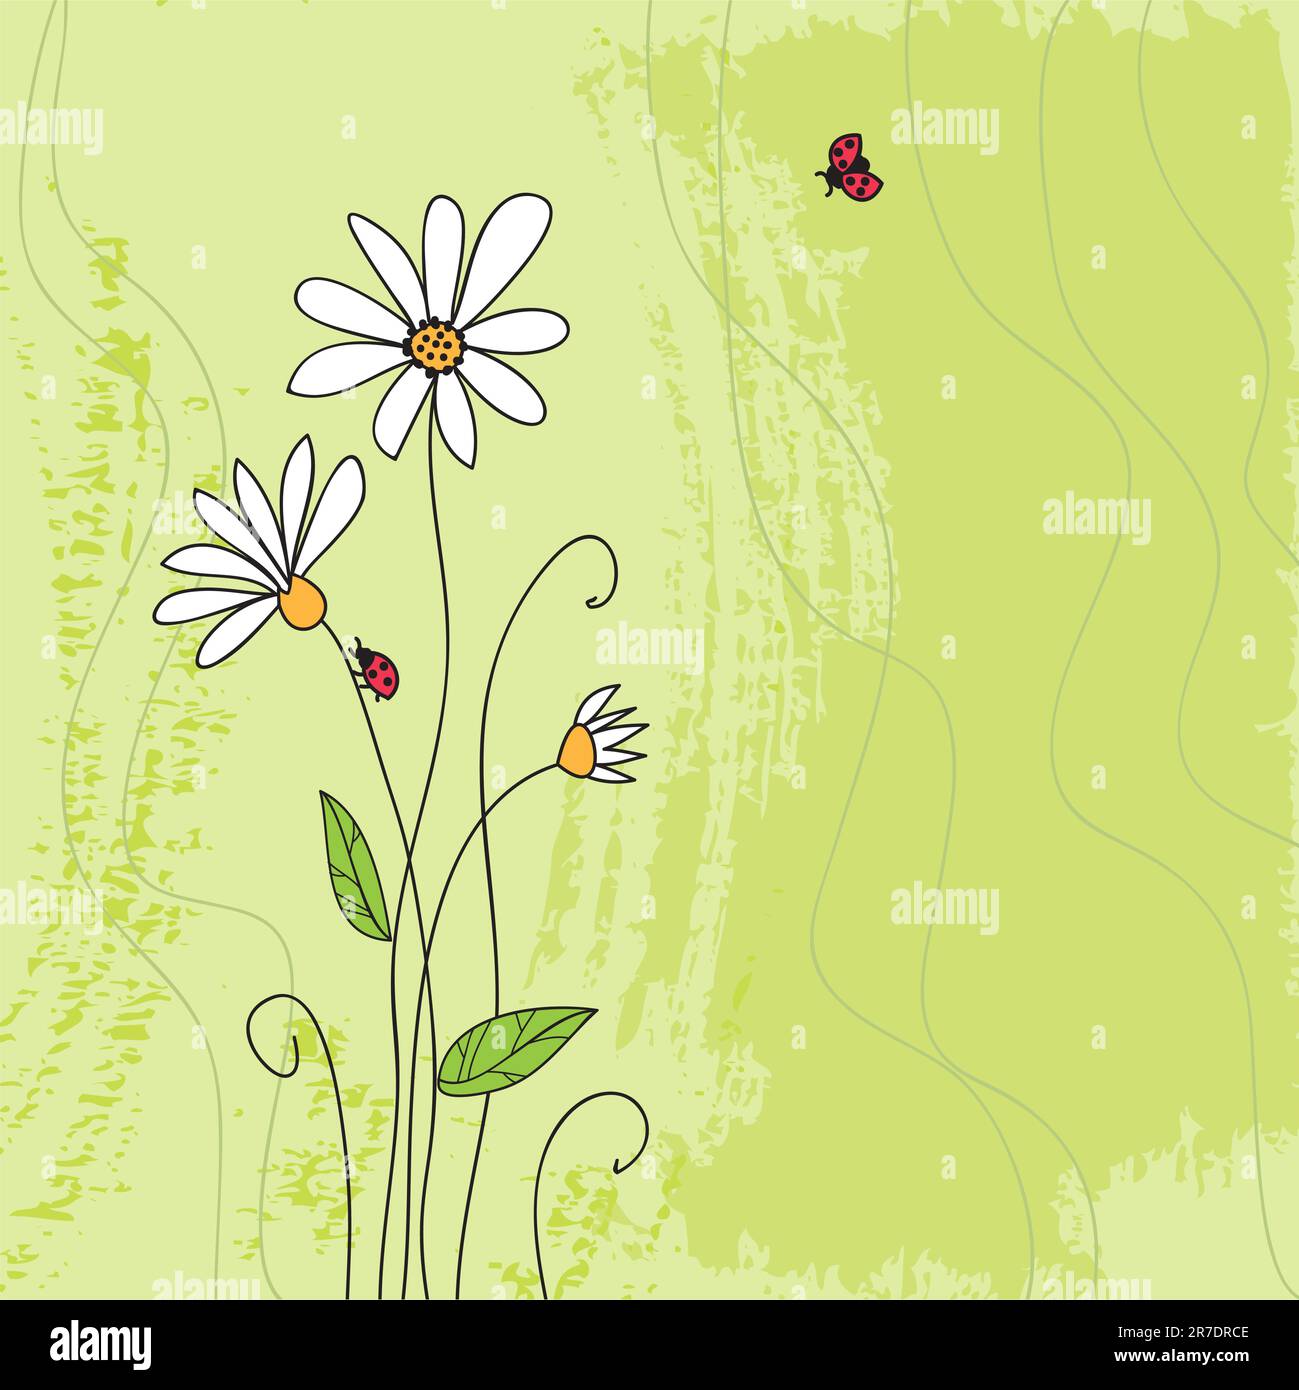 Coccinelle sur fleur de camomille et grunge fond d'herbe verte Illustration de Vecteur